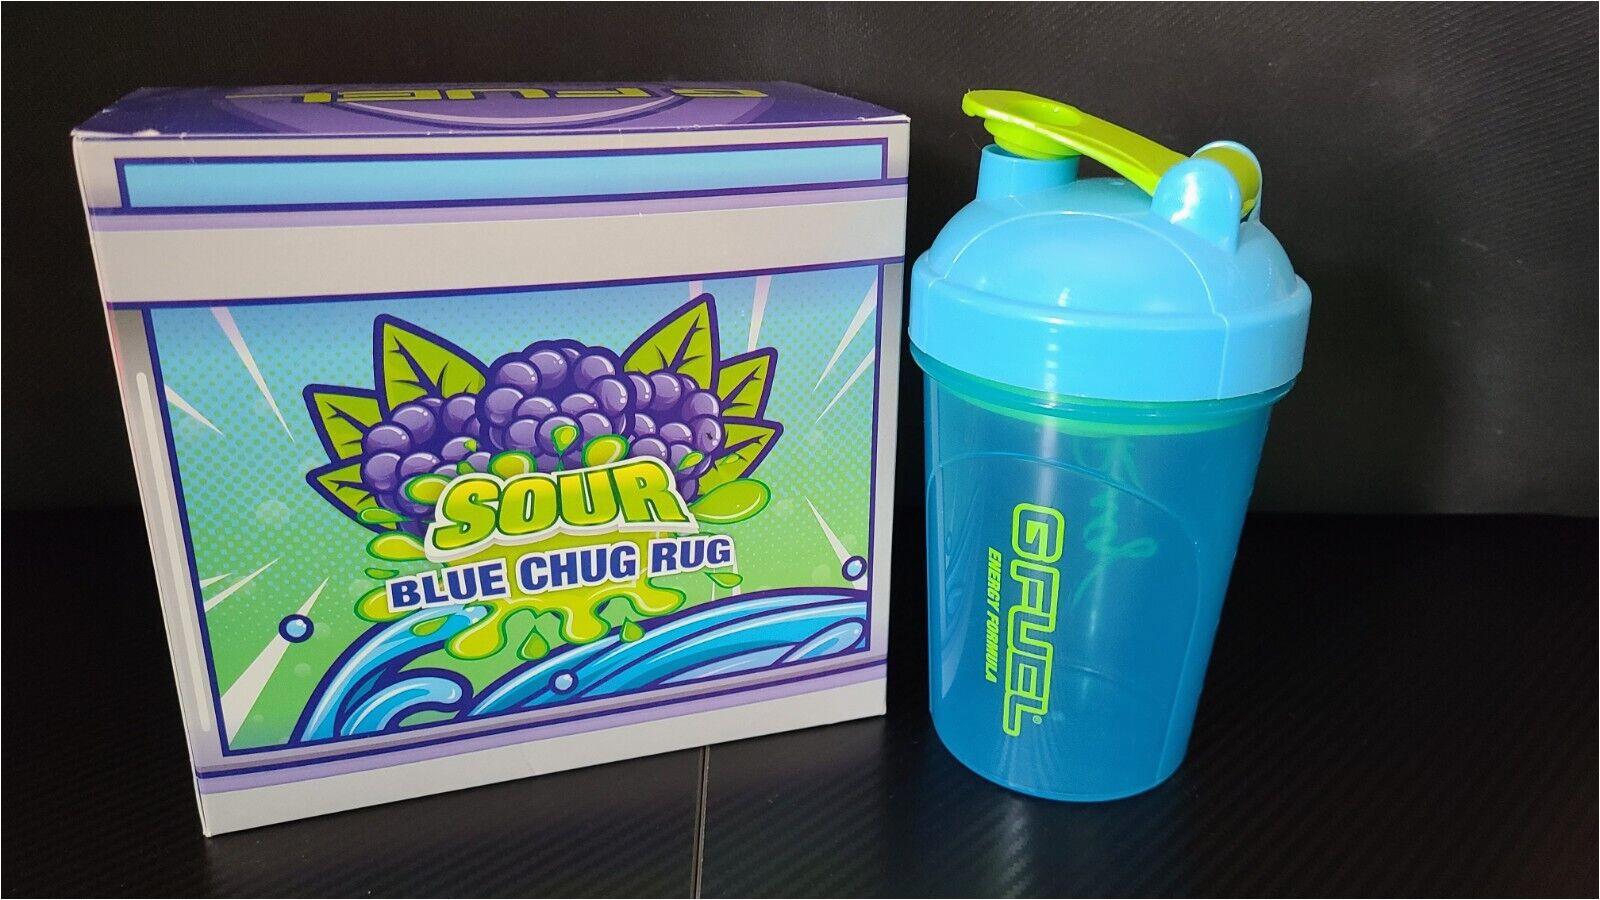 Sour Blue Chug Rug Collectors Box sour Blue Chug Rug Faze Rug *rare* Gfuel Collectors Box and Shaker